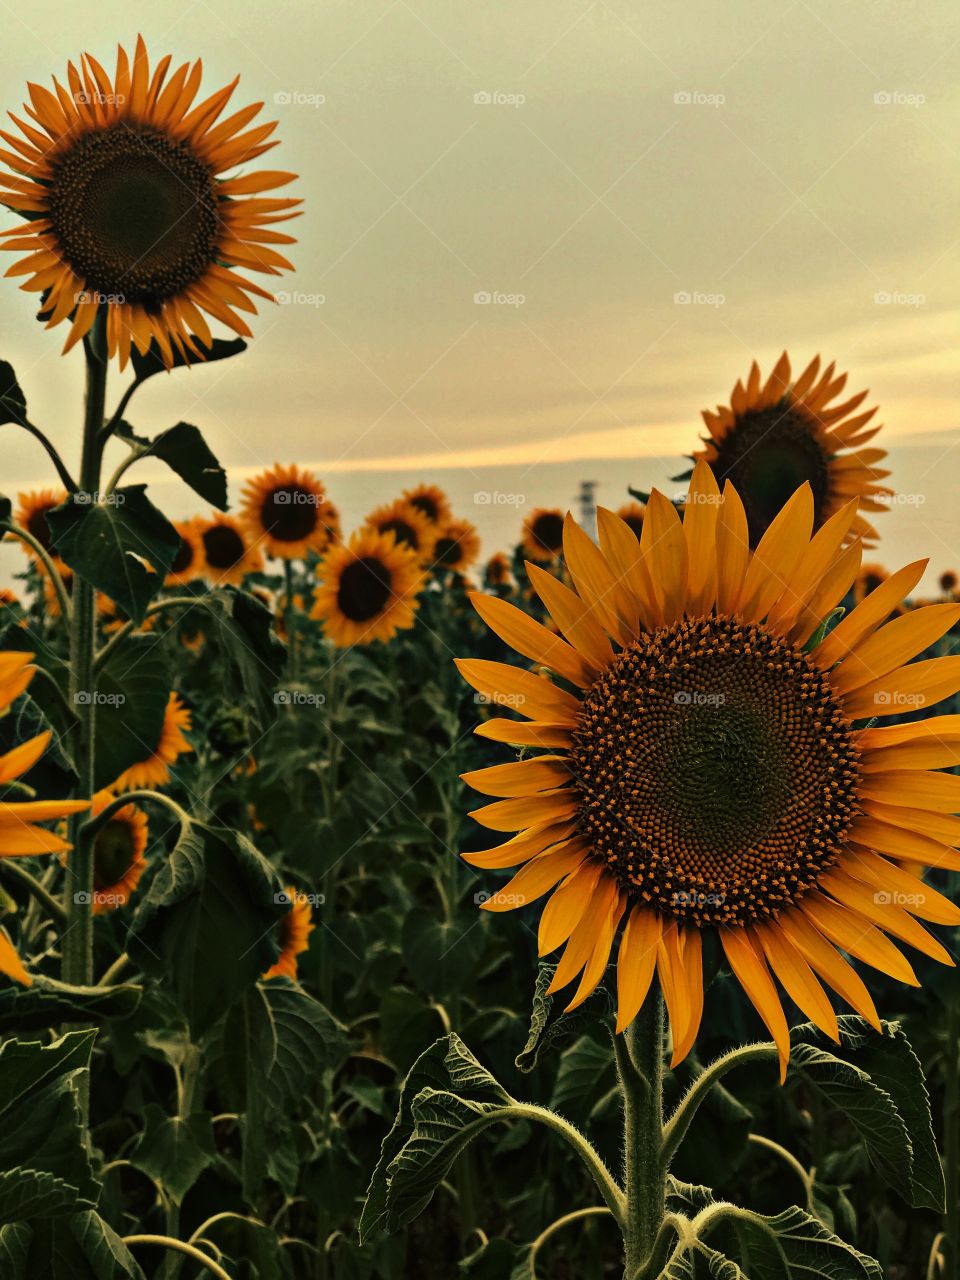 Sunflowers ..